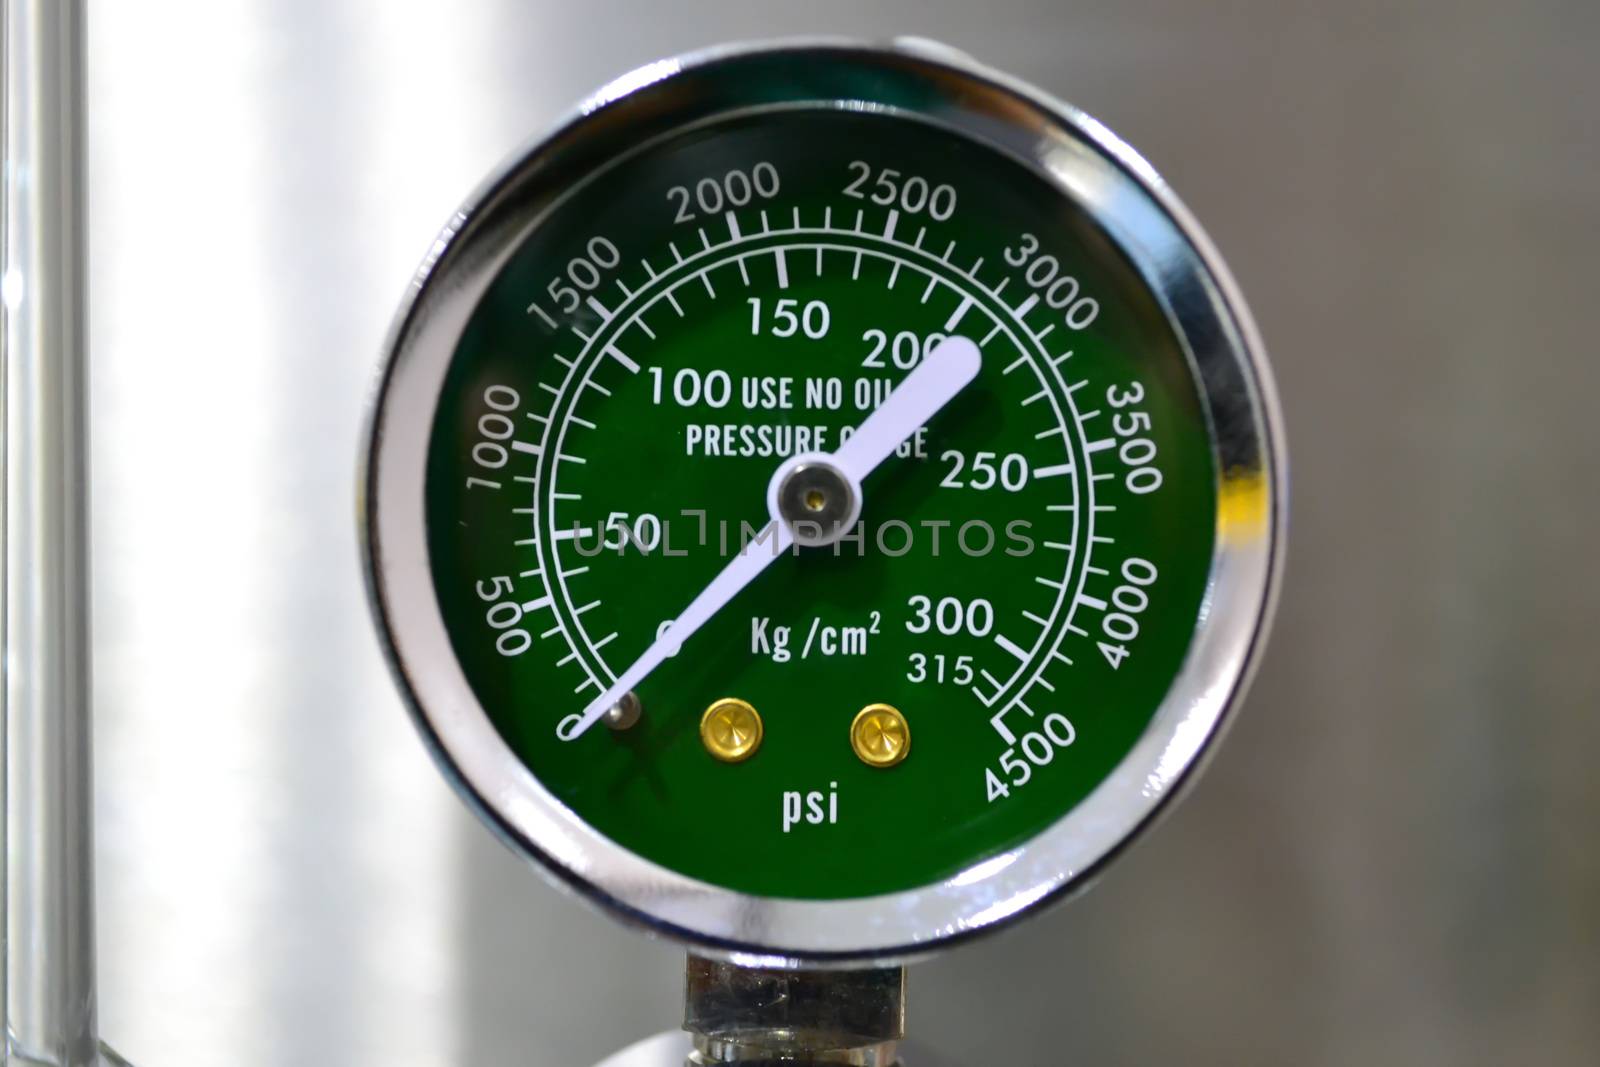 Close up oxygen pressure gauge in hospital